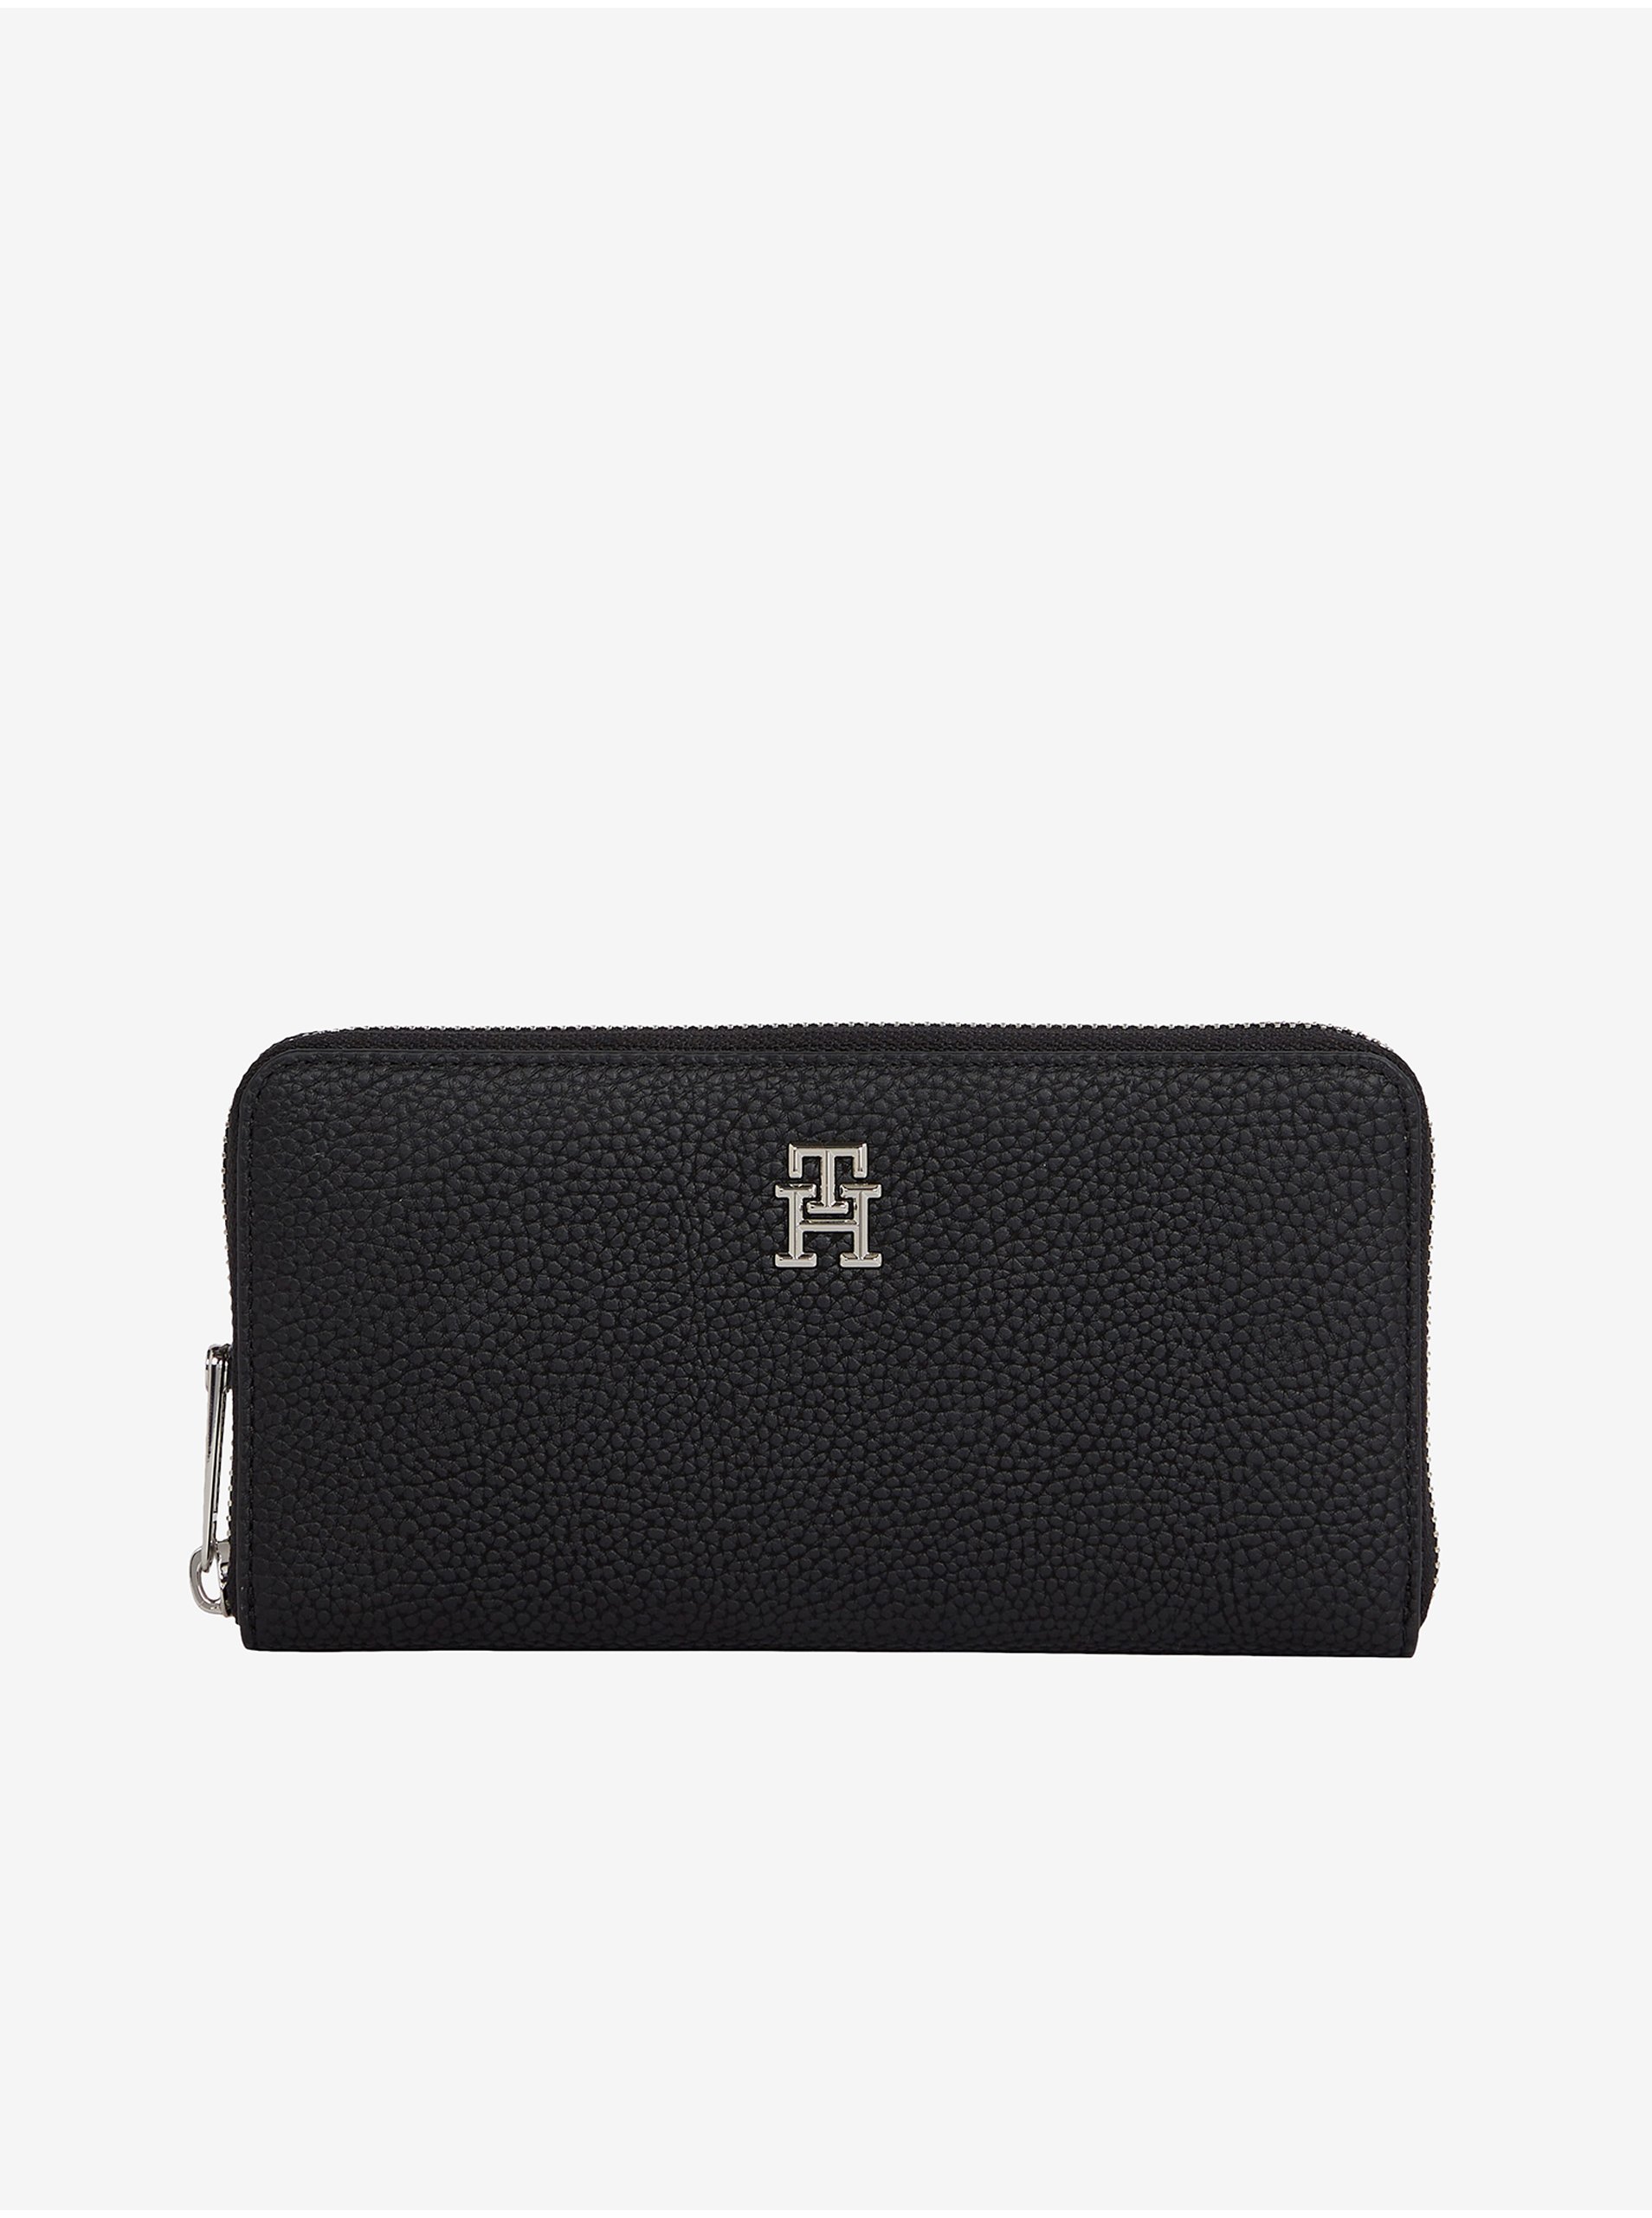 E-shop Černá dámská peněženka Tommy Hilfiger Emblem Large ZA